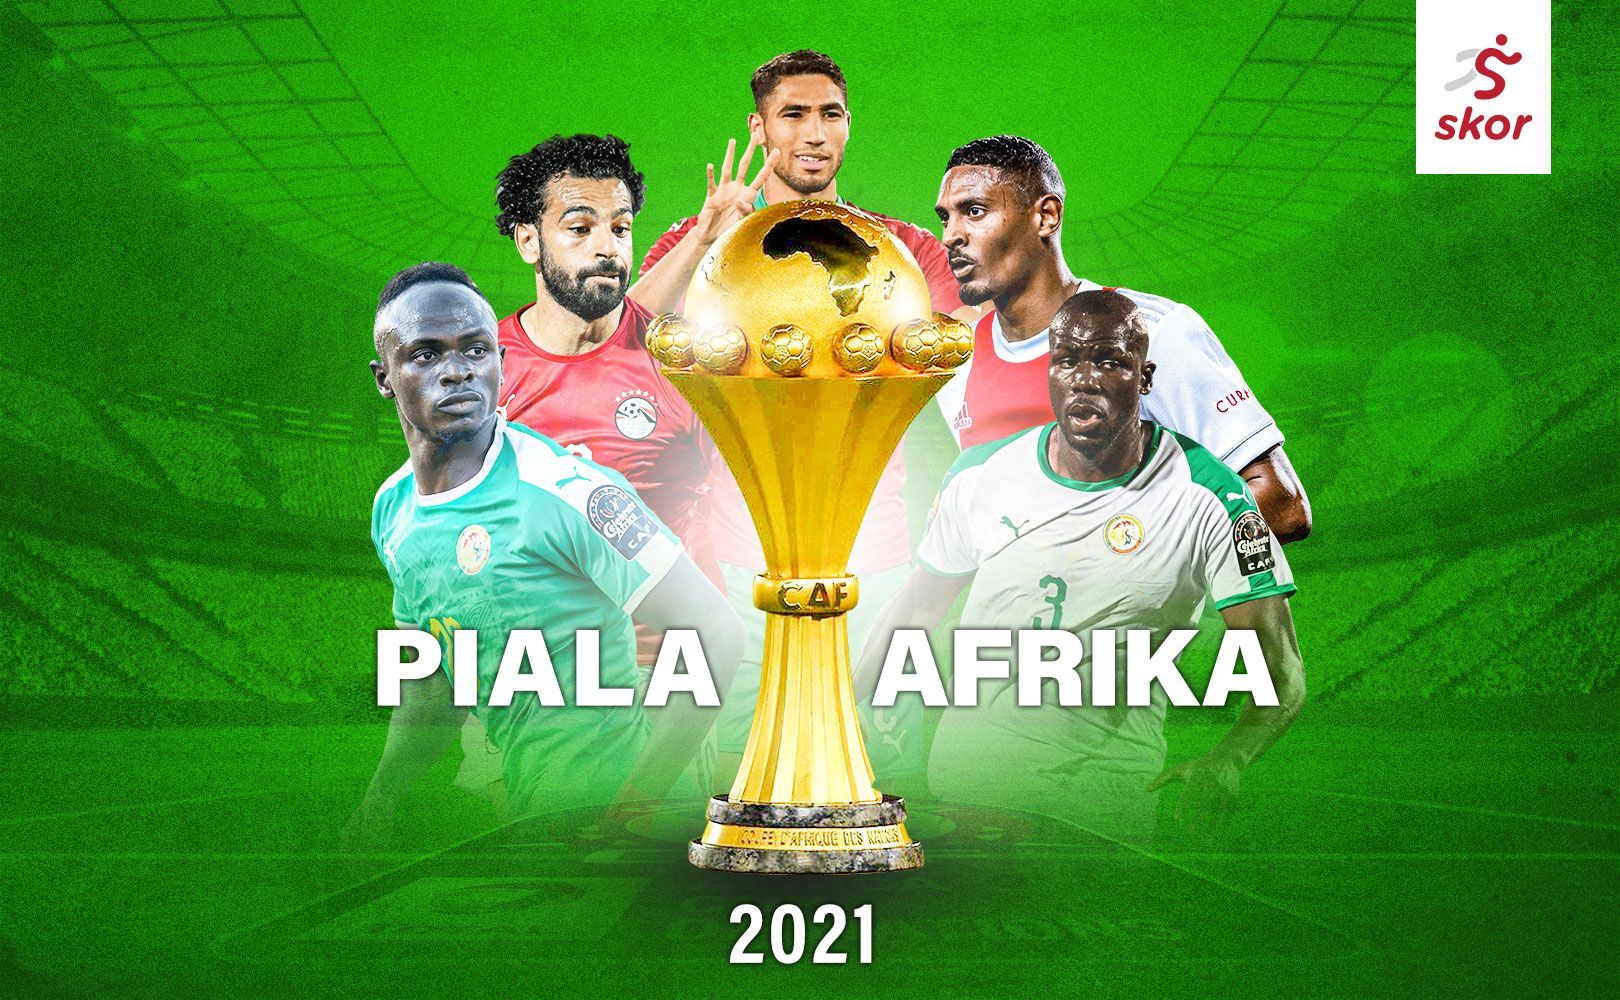 Sadio Mane (kiri) menjadi salah satu pemain bintang di ajang Piala Afrika 2021.